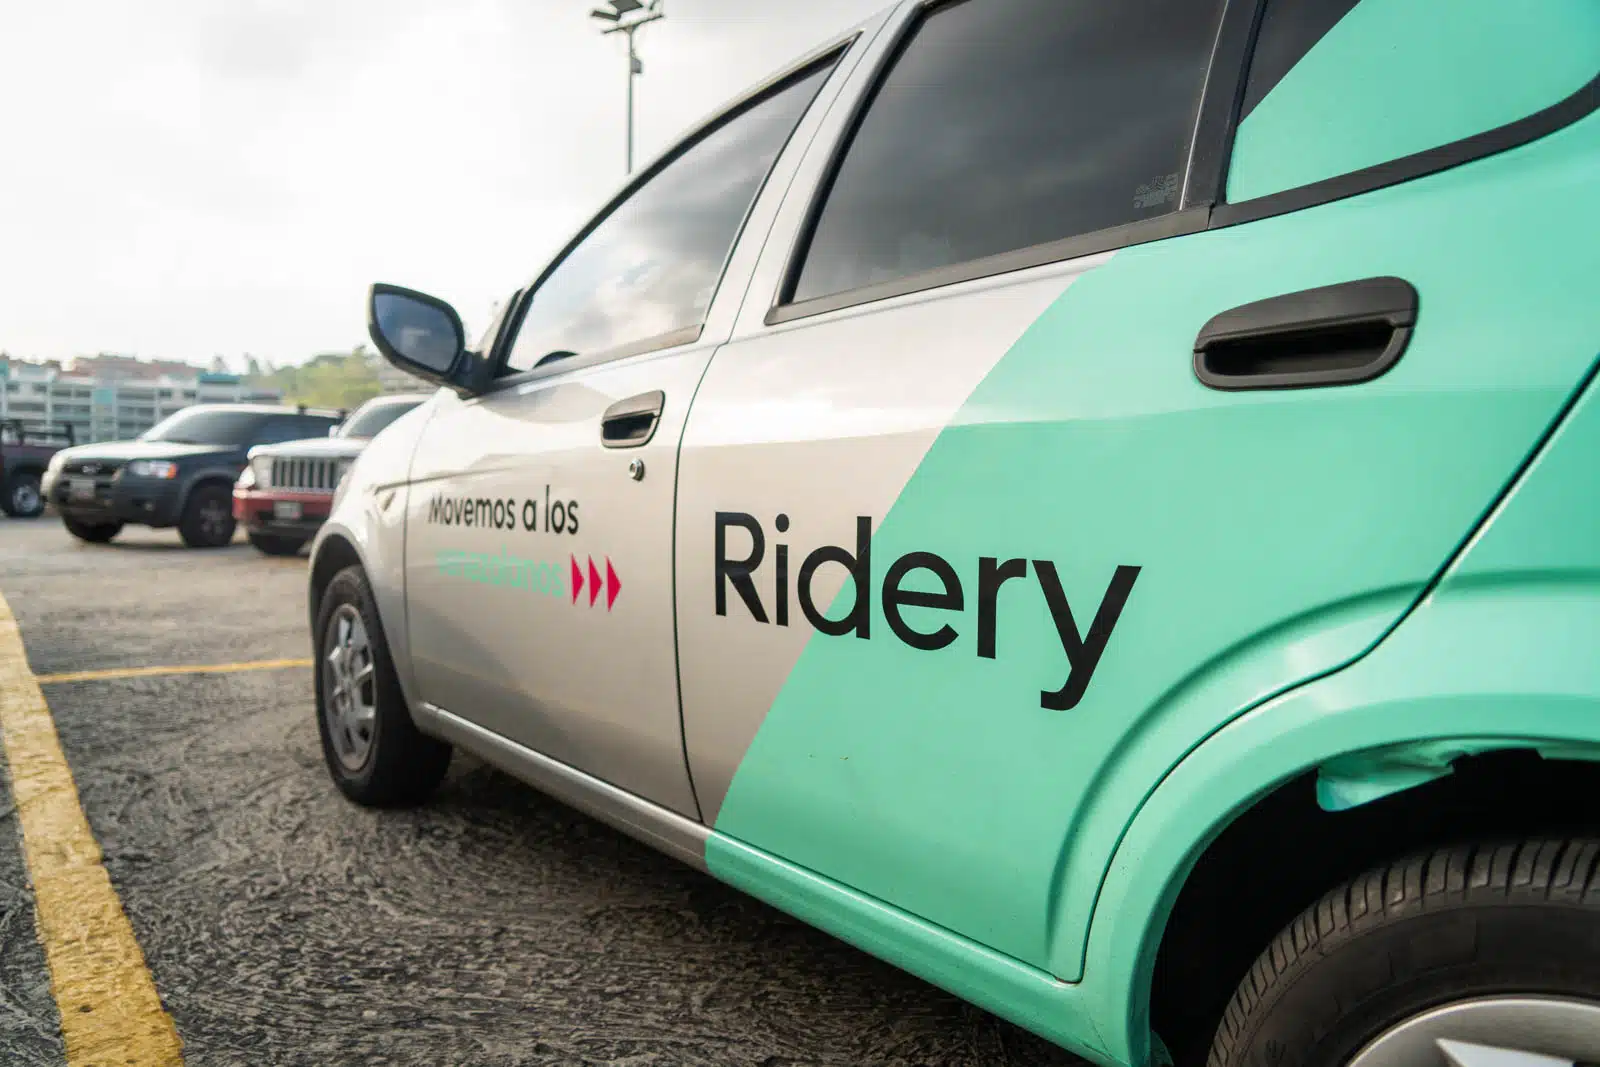 21-Ridery-ofrece-un-plan-de-beneficios-para-sus-conductores-El-Diario-by-Jose-Daniel-Ramos.jpg.webp